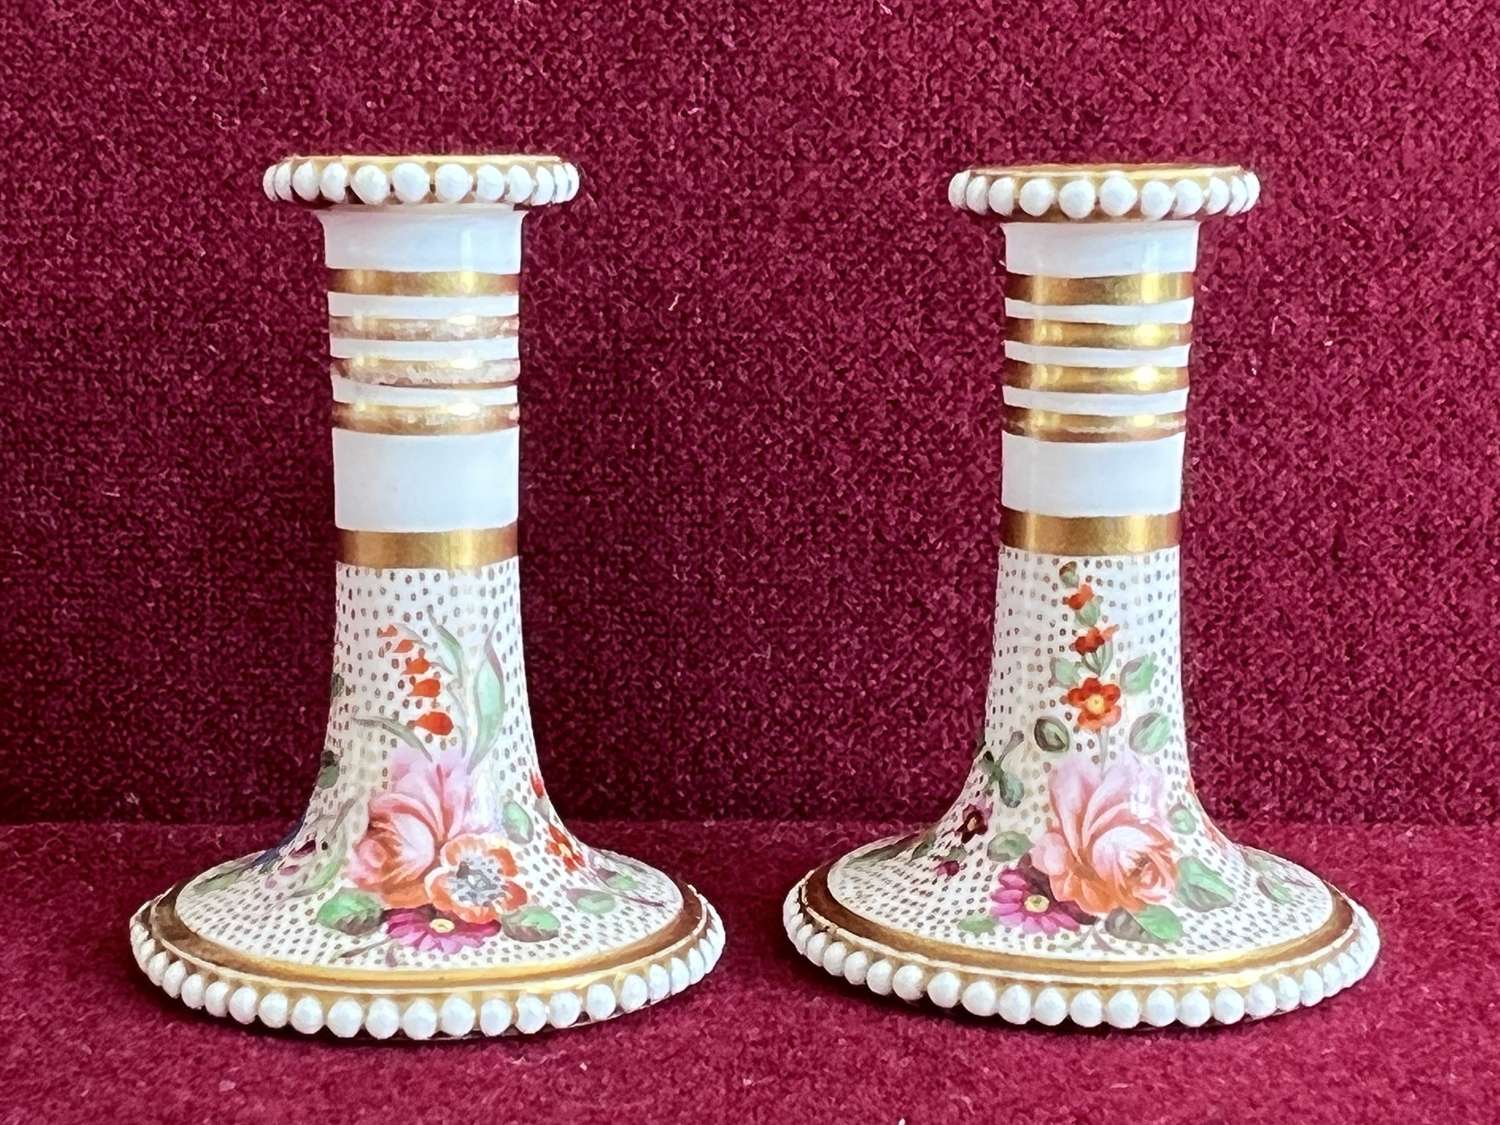 A rare pair of miniature Spode Porcelain Candlesticks c.1815-1820